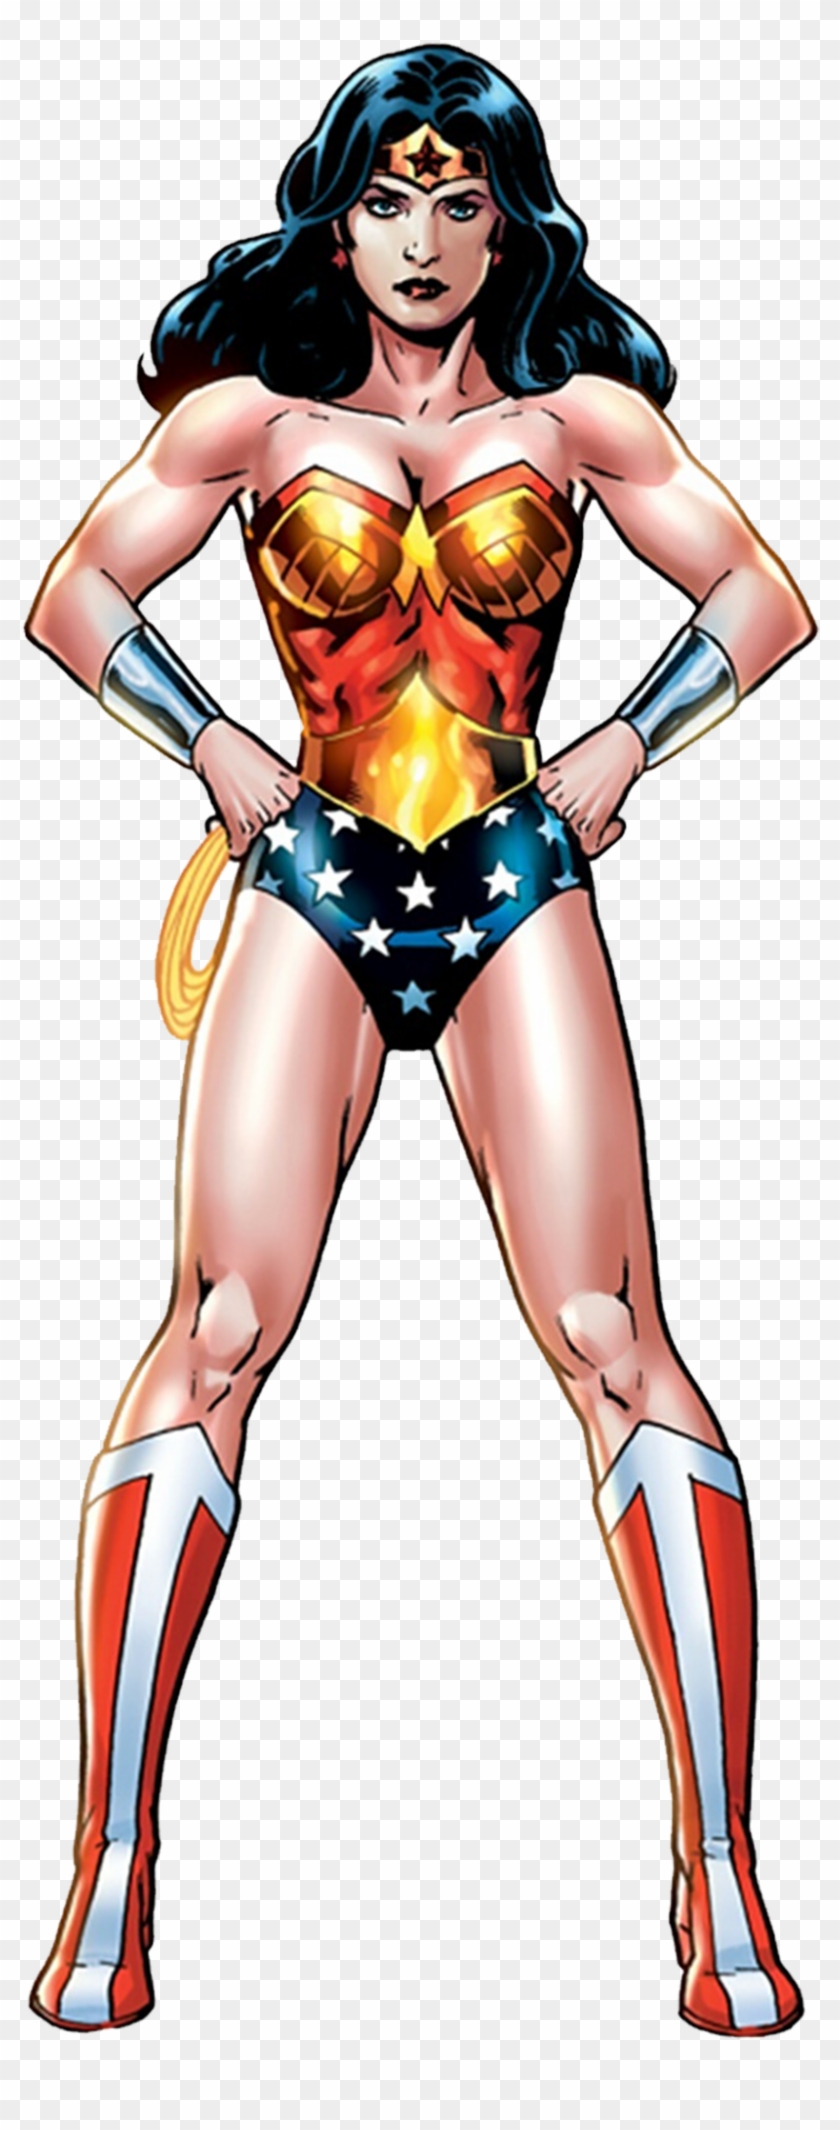 Wonder Woman By Trickarrowdesigns Wonder Woman By Trickarrowdesigns - Wonder Woman Cartoon Png #1260634